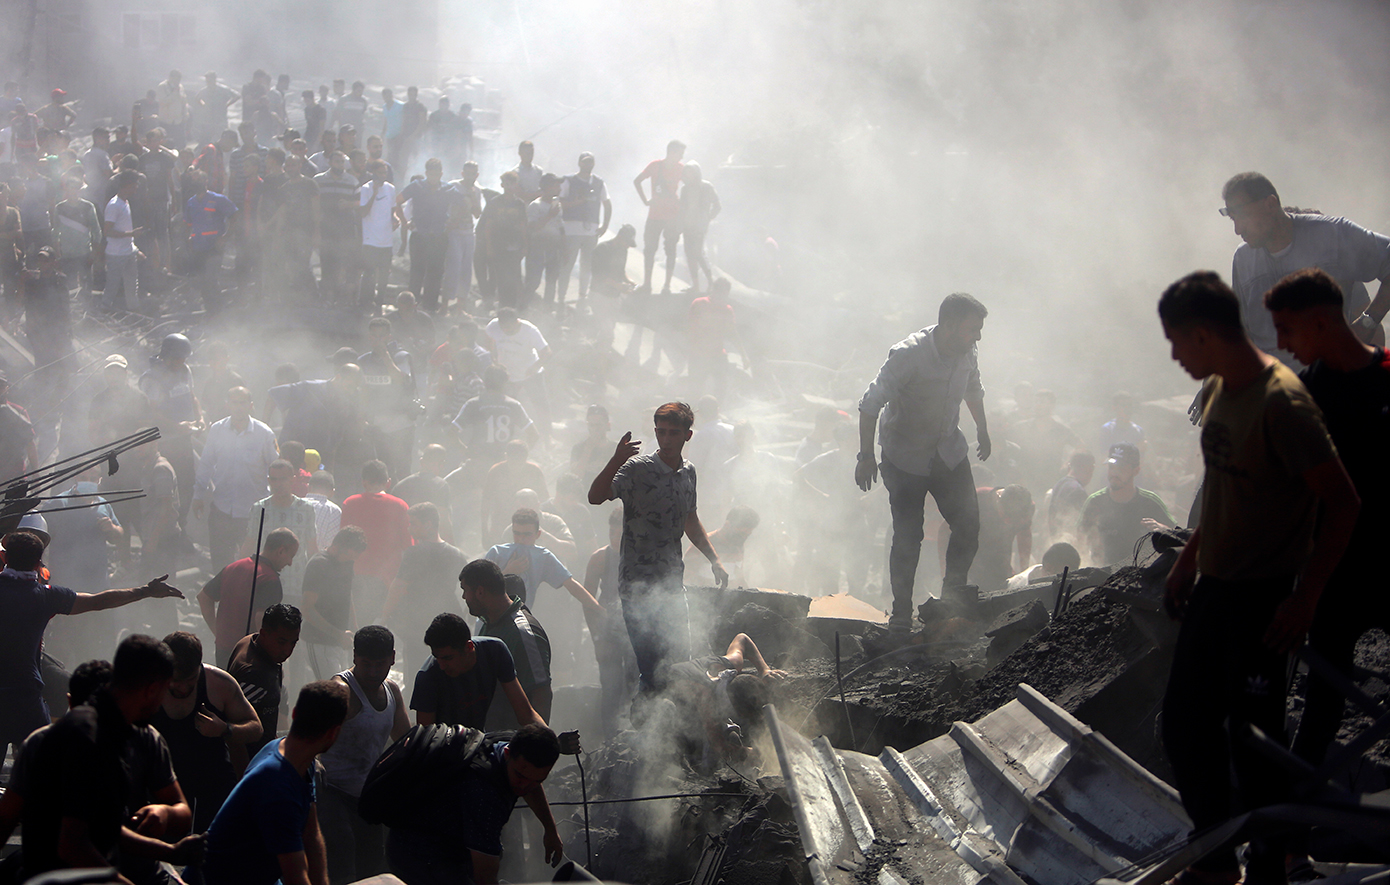 Χάος στη Γάζα – Ομάδες ενόπλων άρπαξαν από χρηματοκιβώτια τραπεζών ισραηλινά σέκελ αξίας εκατομμυρίων ευρώ